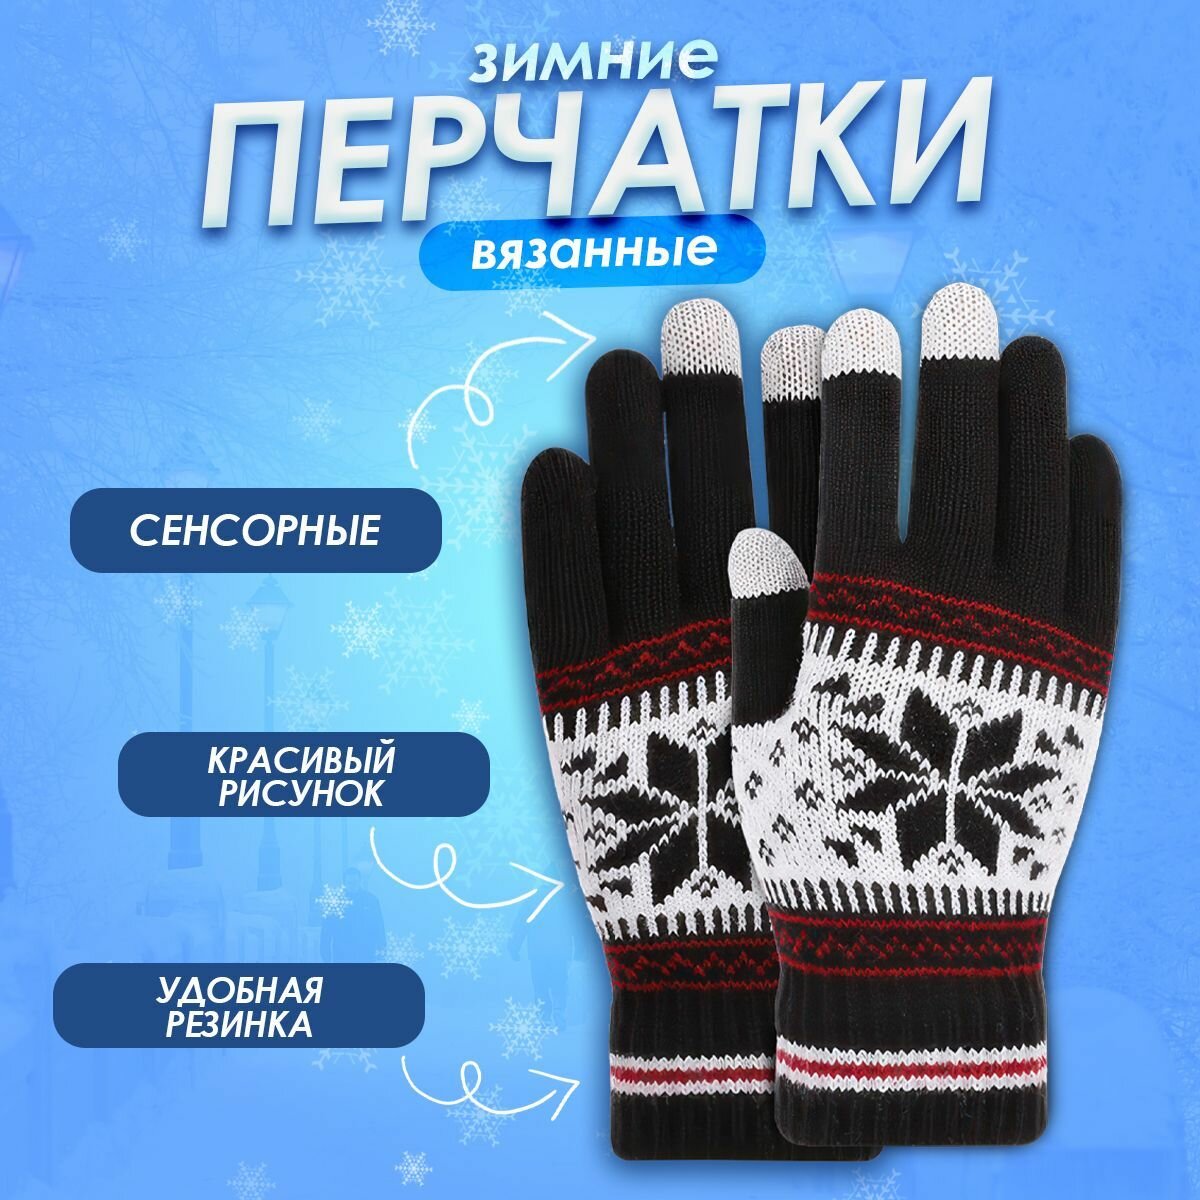 Сенсорные перчатки вязанные зимние утепленные